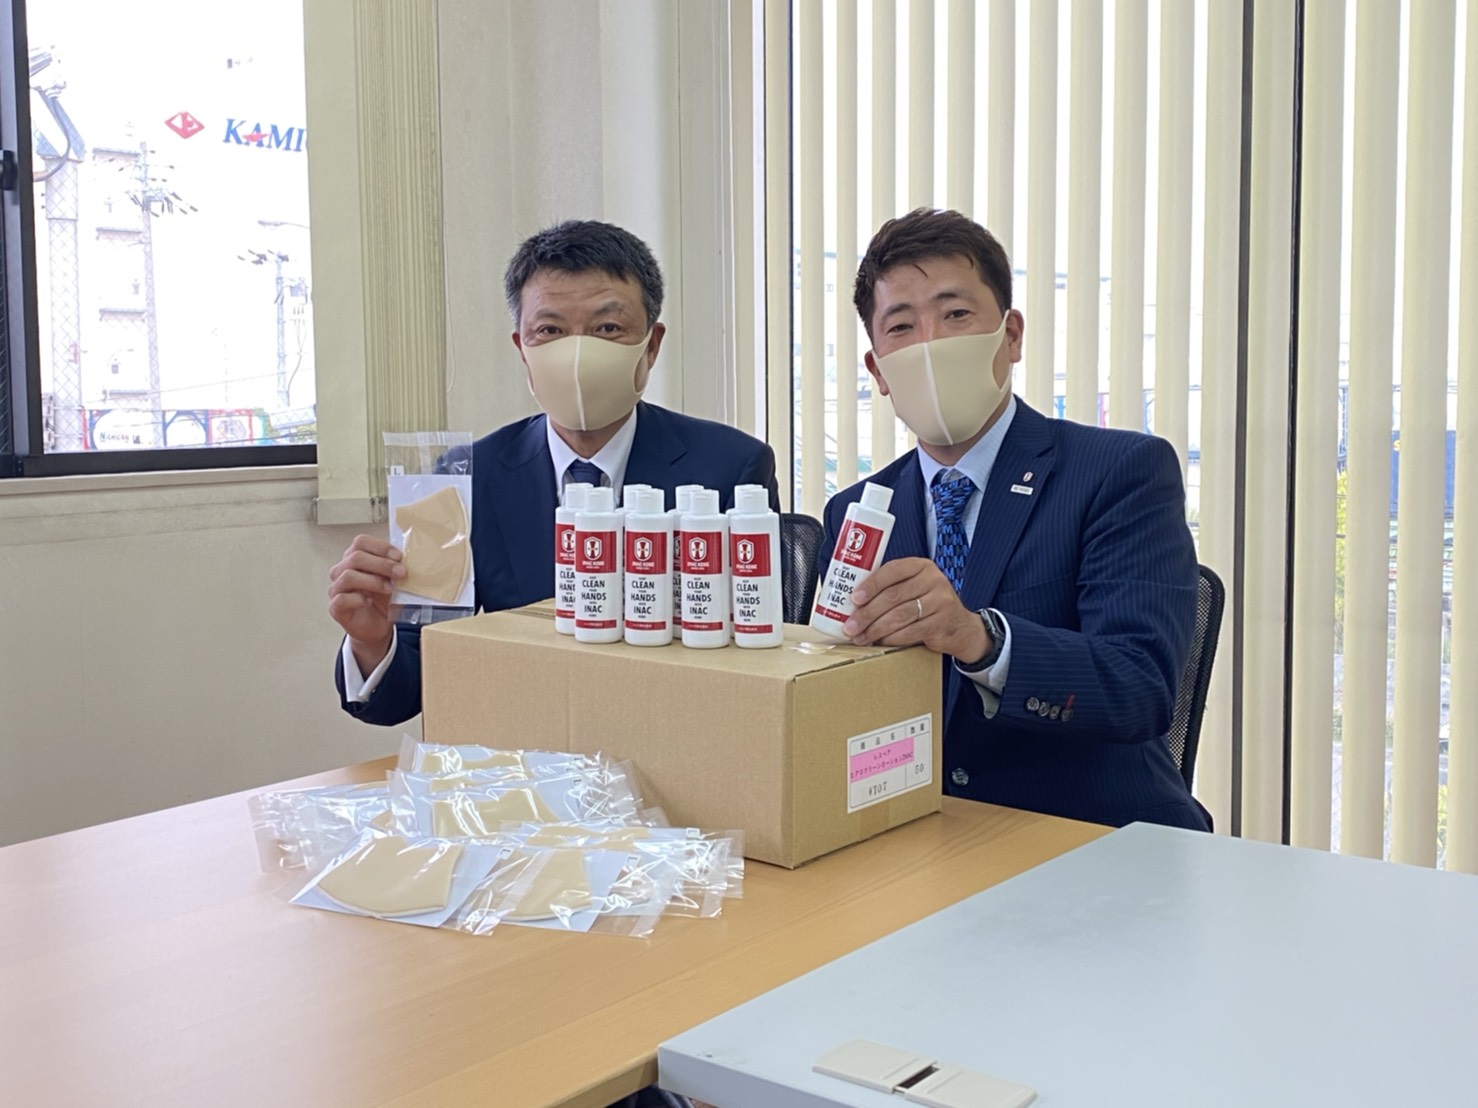 ニュース Mkタクシー西日本グループへヒアロクリーンローションとマスク寄贈に関するお知らせ Inac神戸 レオネッサ